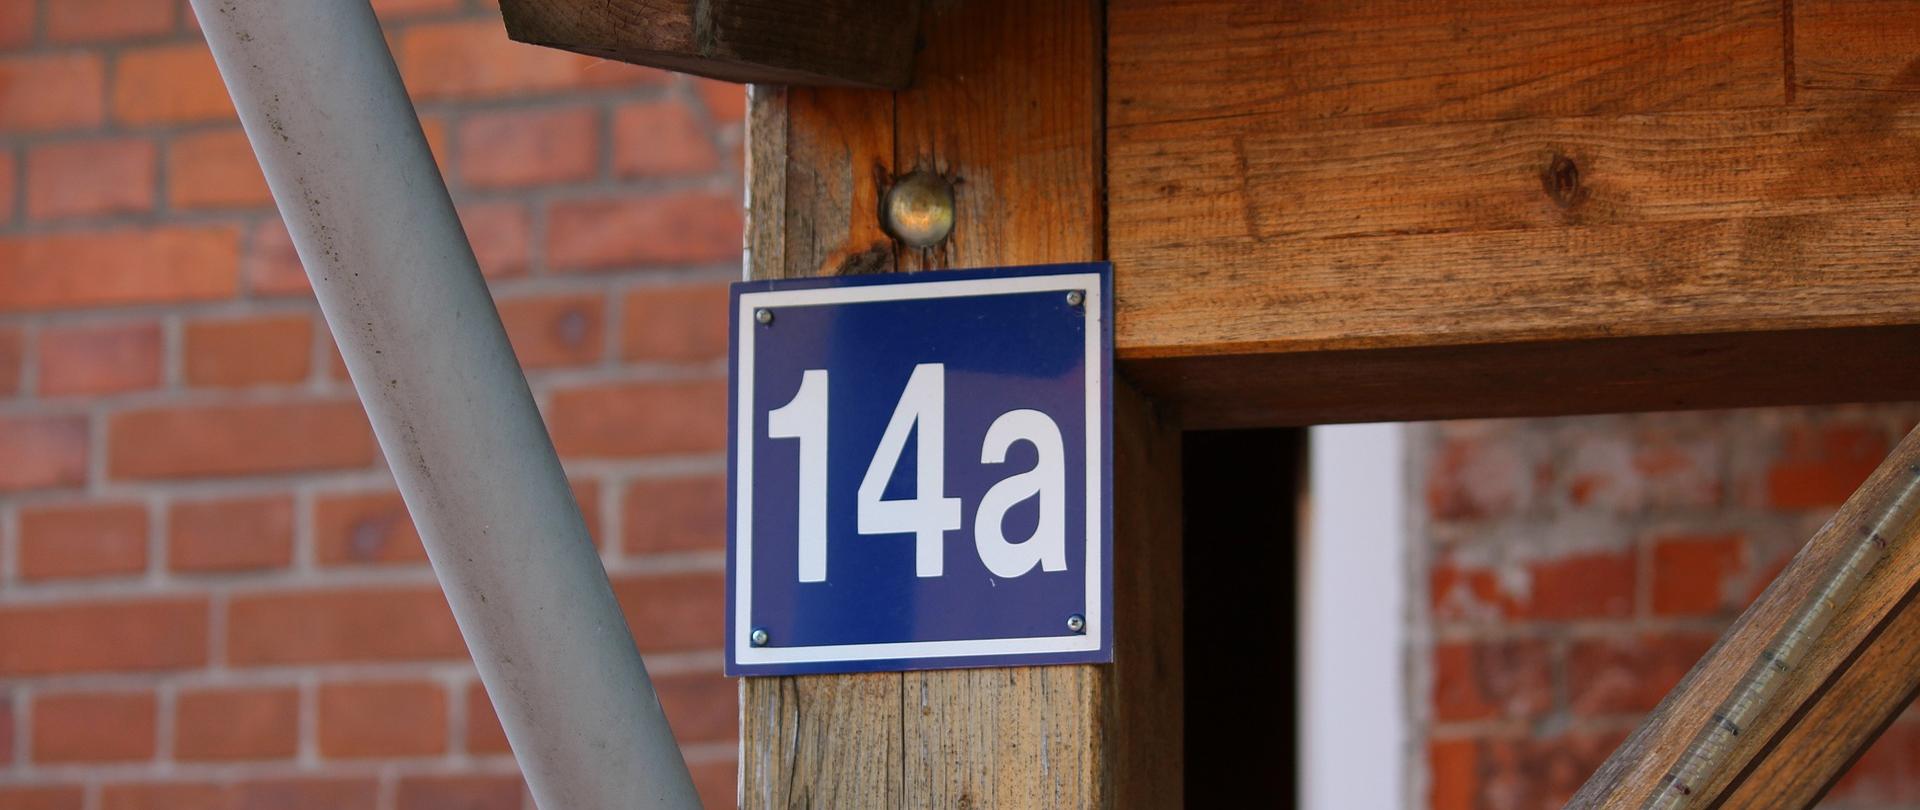 Tablica z numerem porządkowym budynku 14a przyczepiona do drewnianej konstrukcji przed ceglaną ścianą. Z konstrukcją łączy się także rynna.